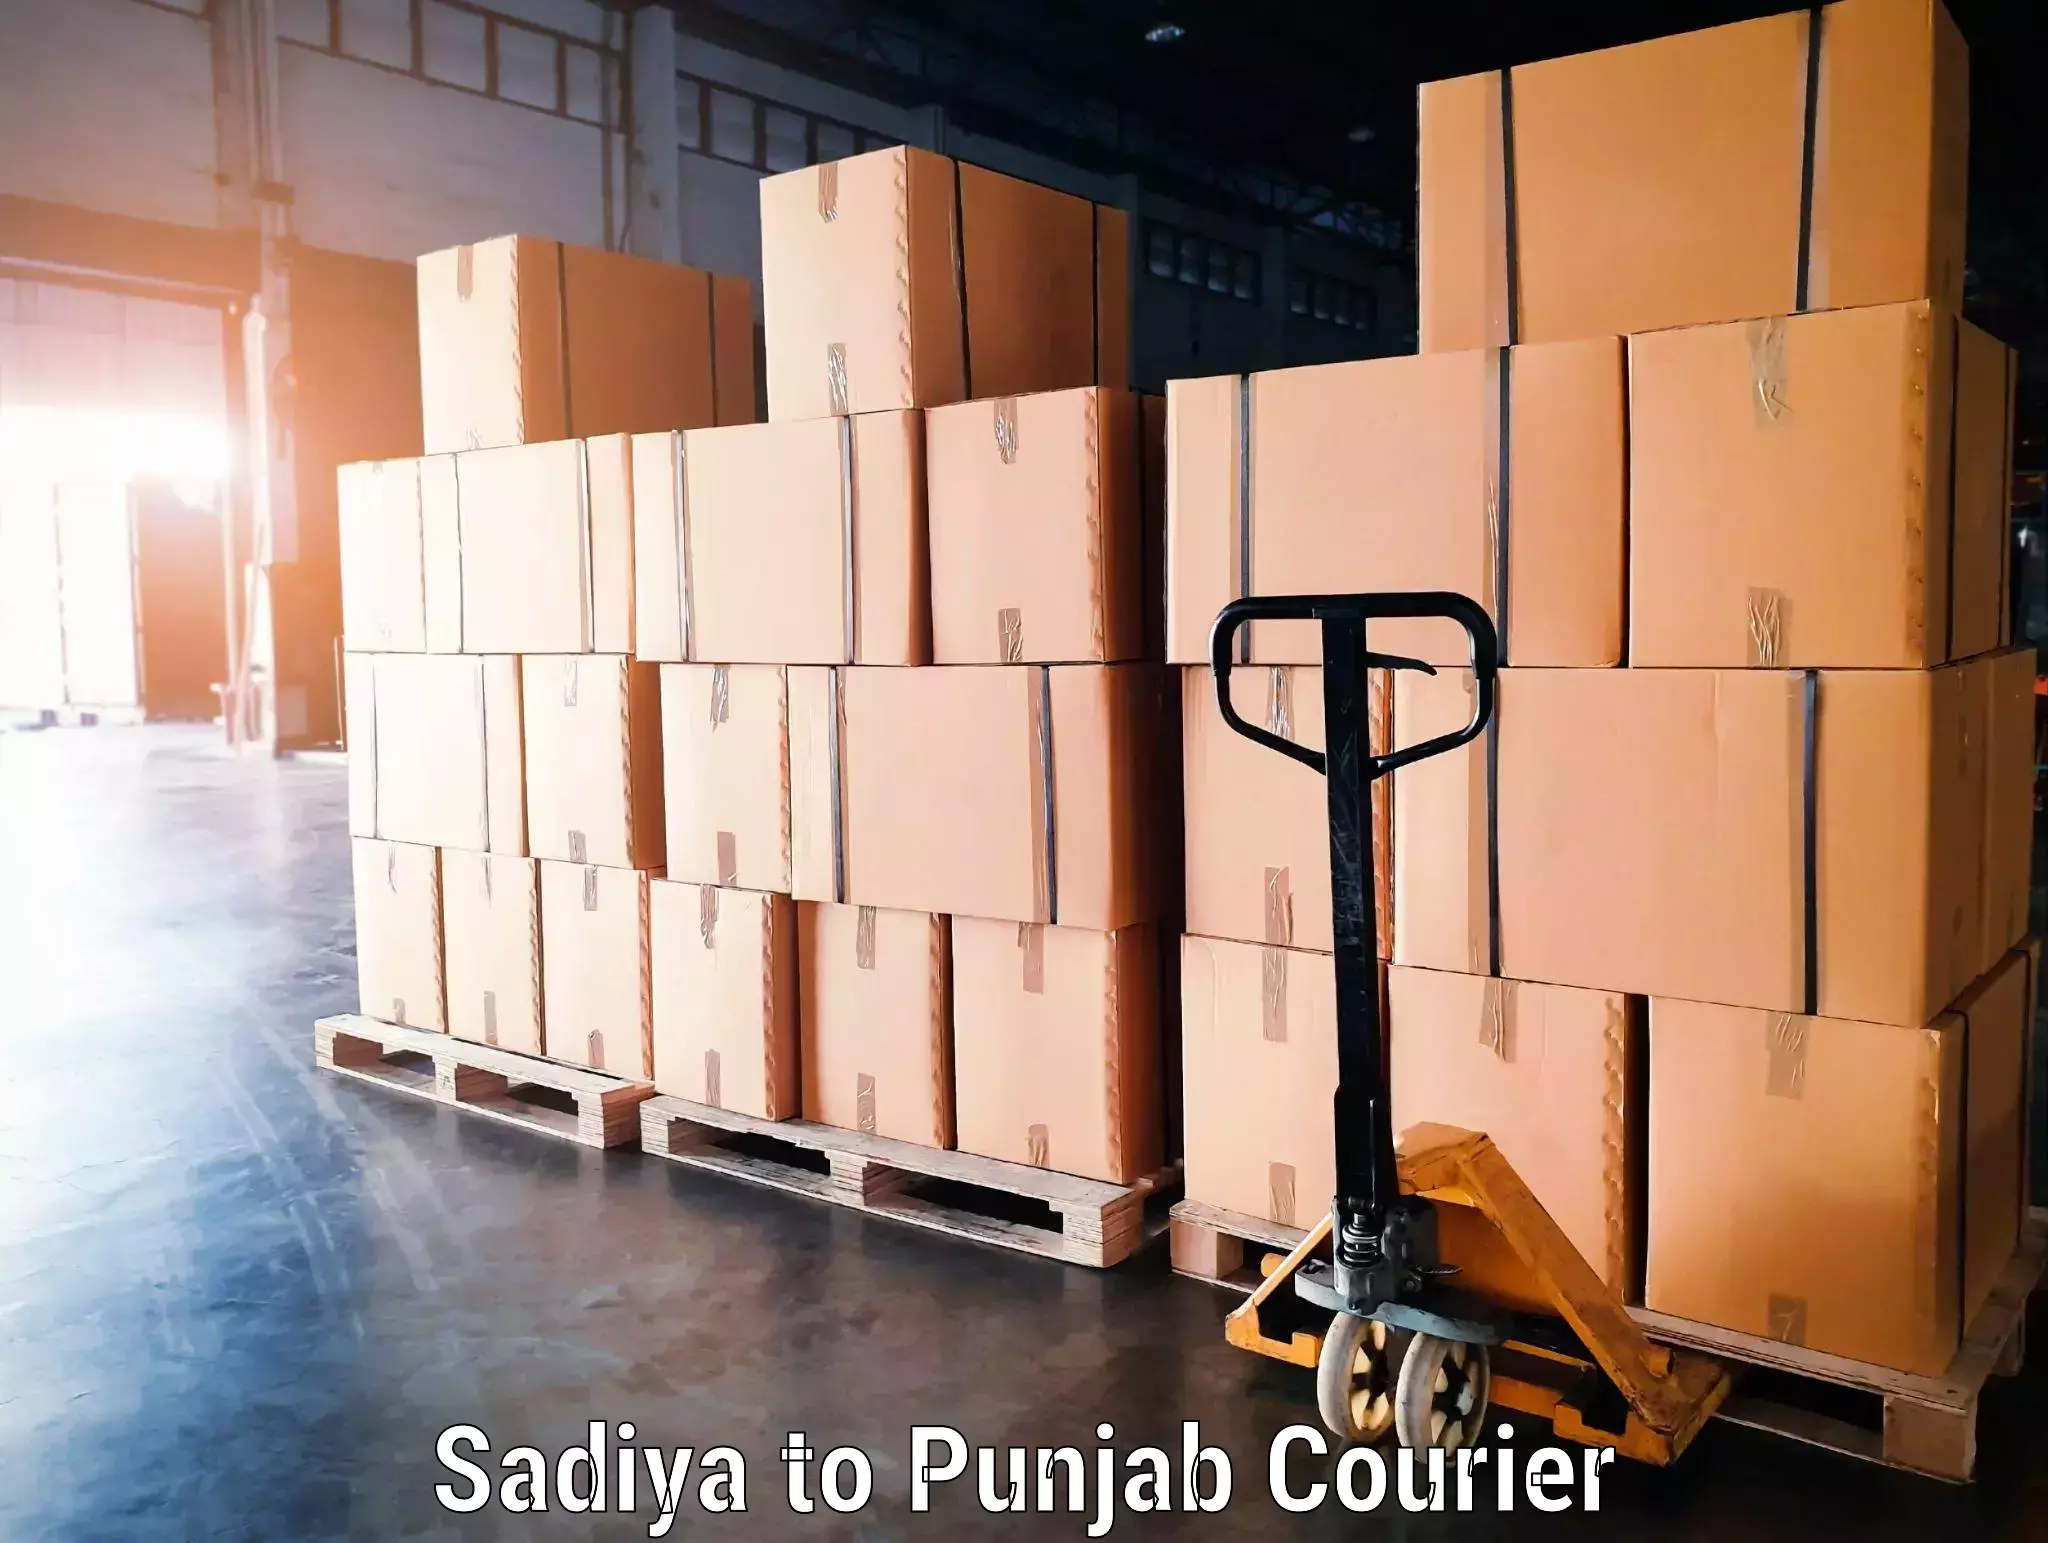 Personal effects shipping Sadiya to Zirakpur